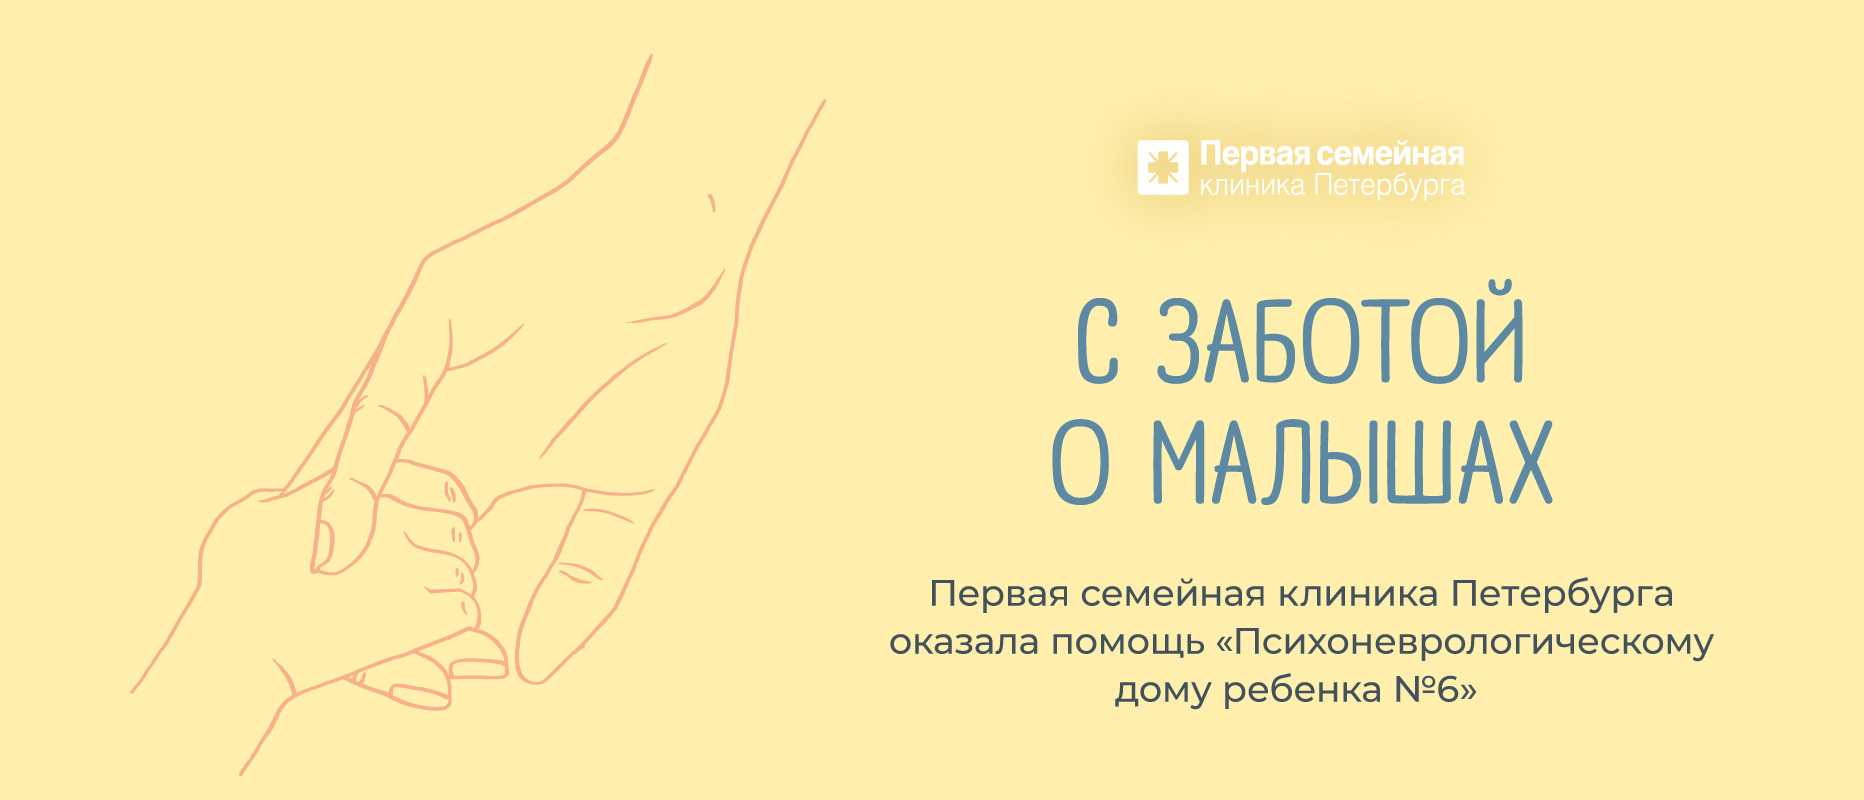 Забота Первой семейной клиники Петербурга о маленьких и особенных детях